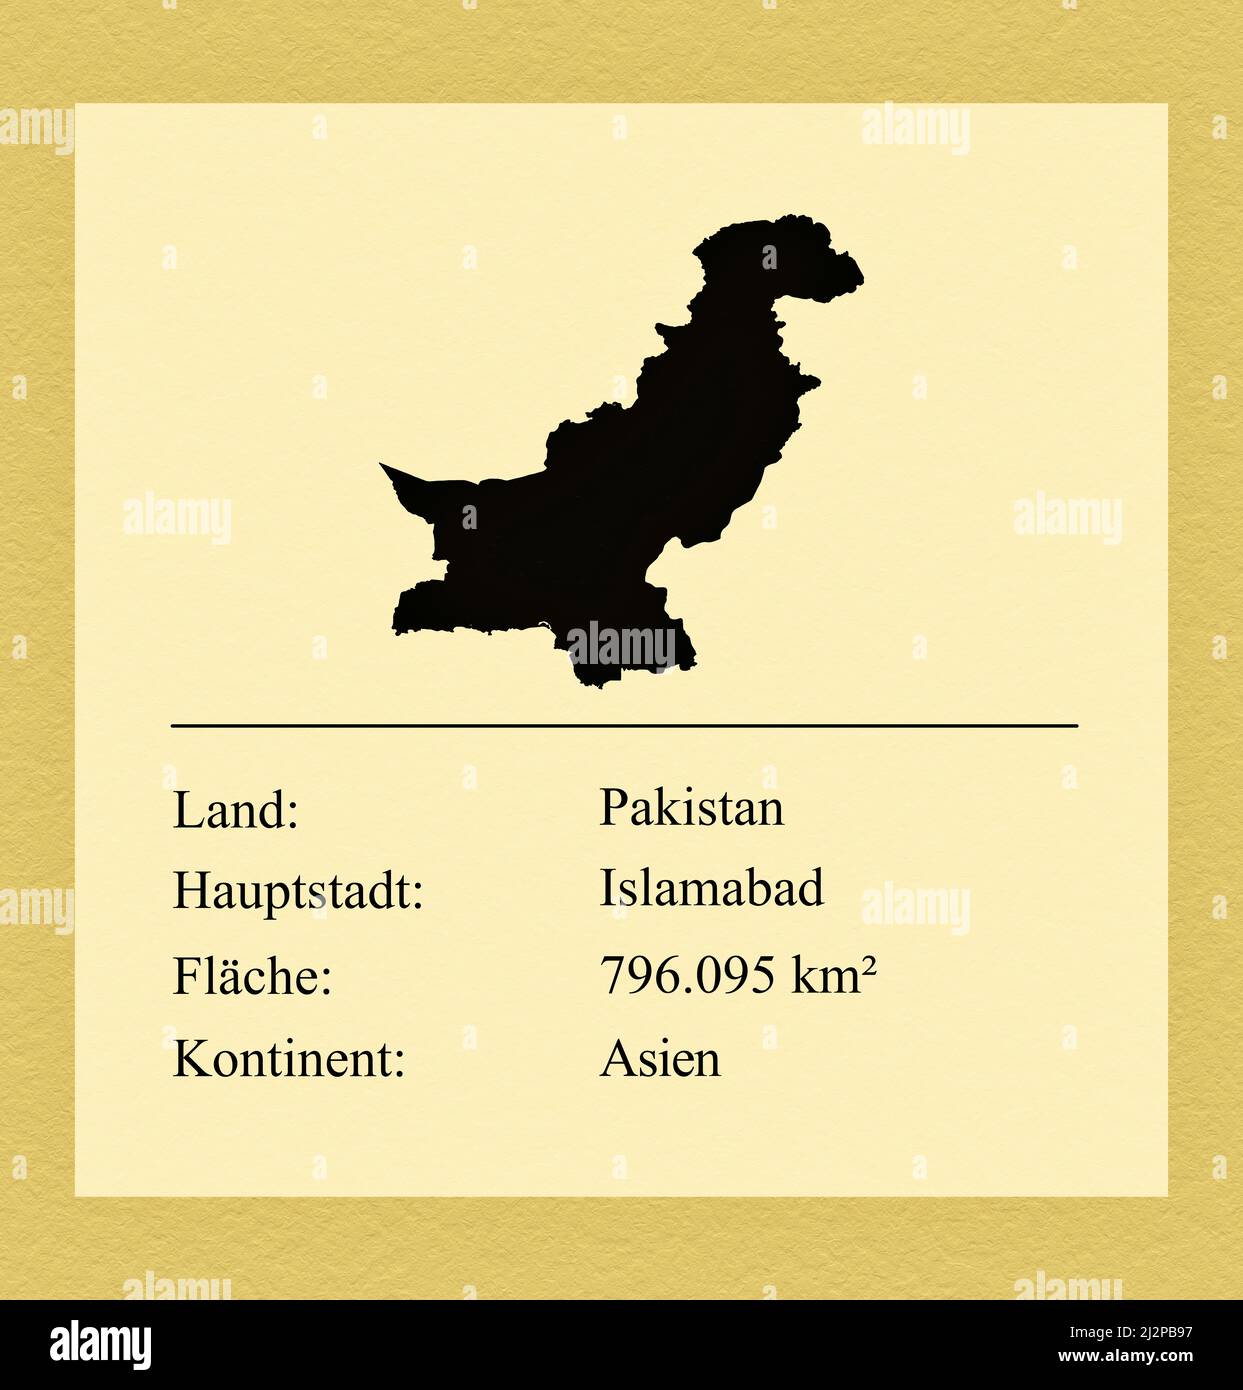 Umrisse des Landes Pakistan, darunter ein kleiner Steckbrief mit Ländernamen, Hauptstadt, Fläche und Kontinent Foto Stock